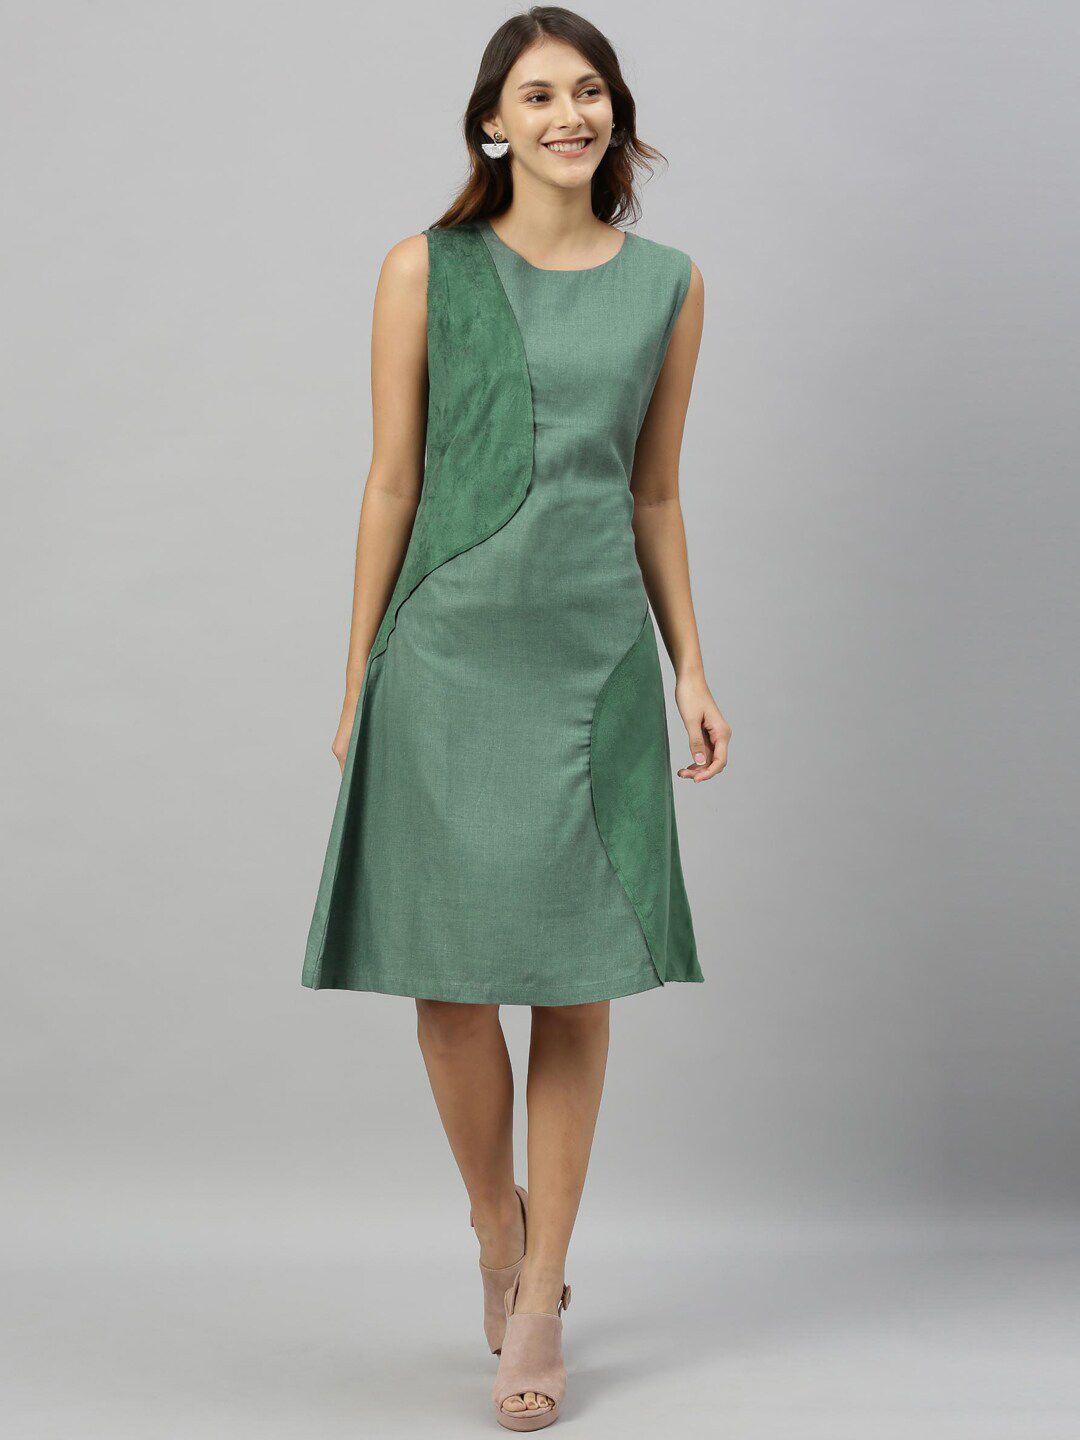 rareism-women-green-solid-a-line-dress